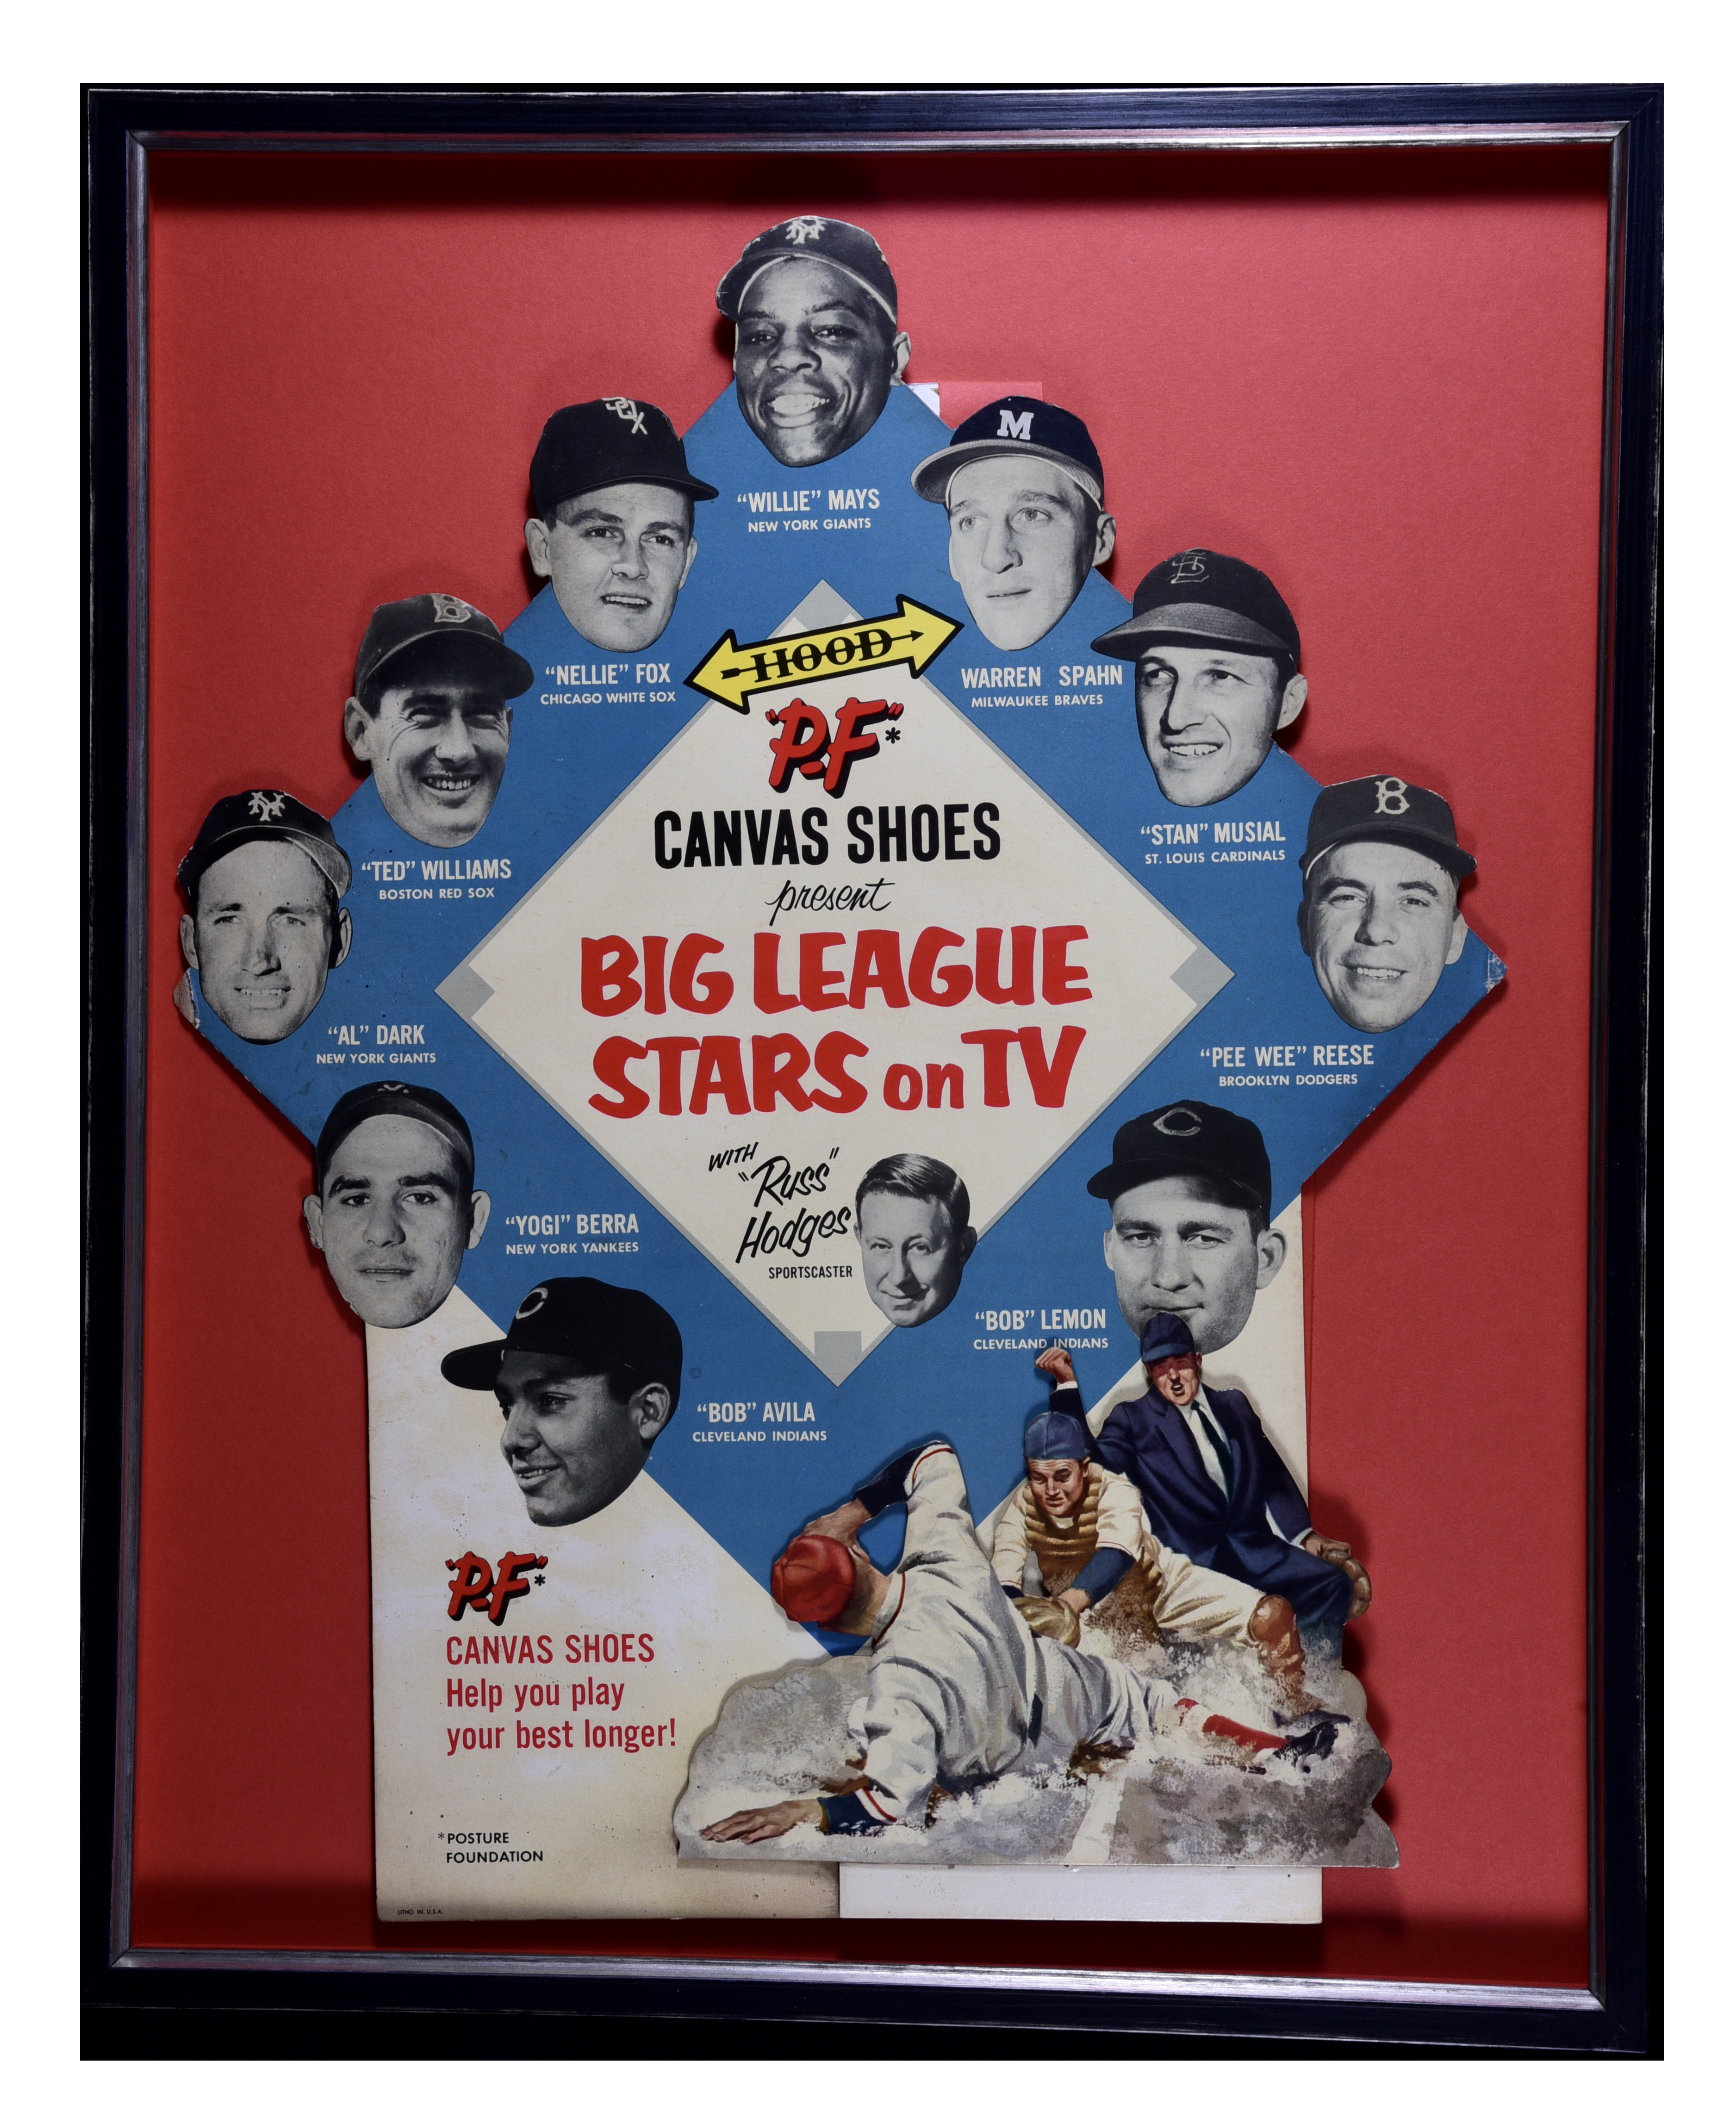 St Louis Cardinals 1953 Program Poster #1, Vintage Memorabilia